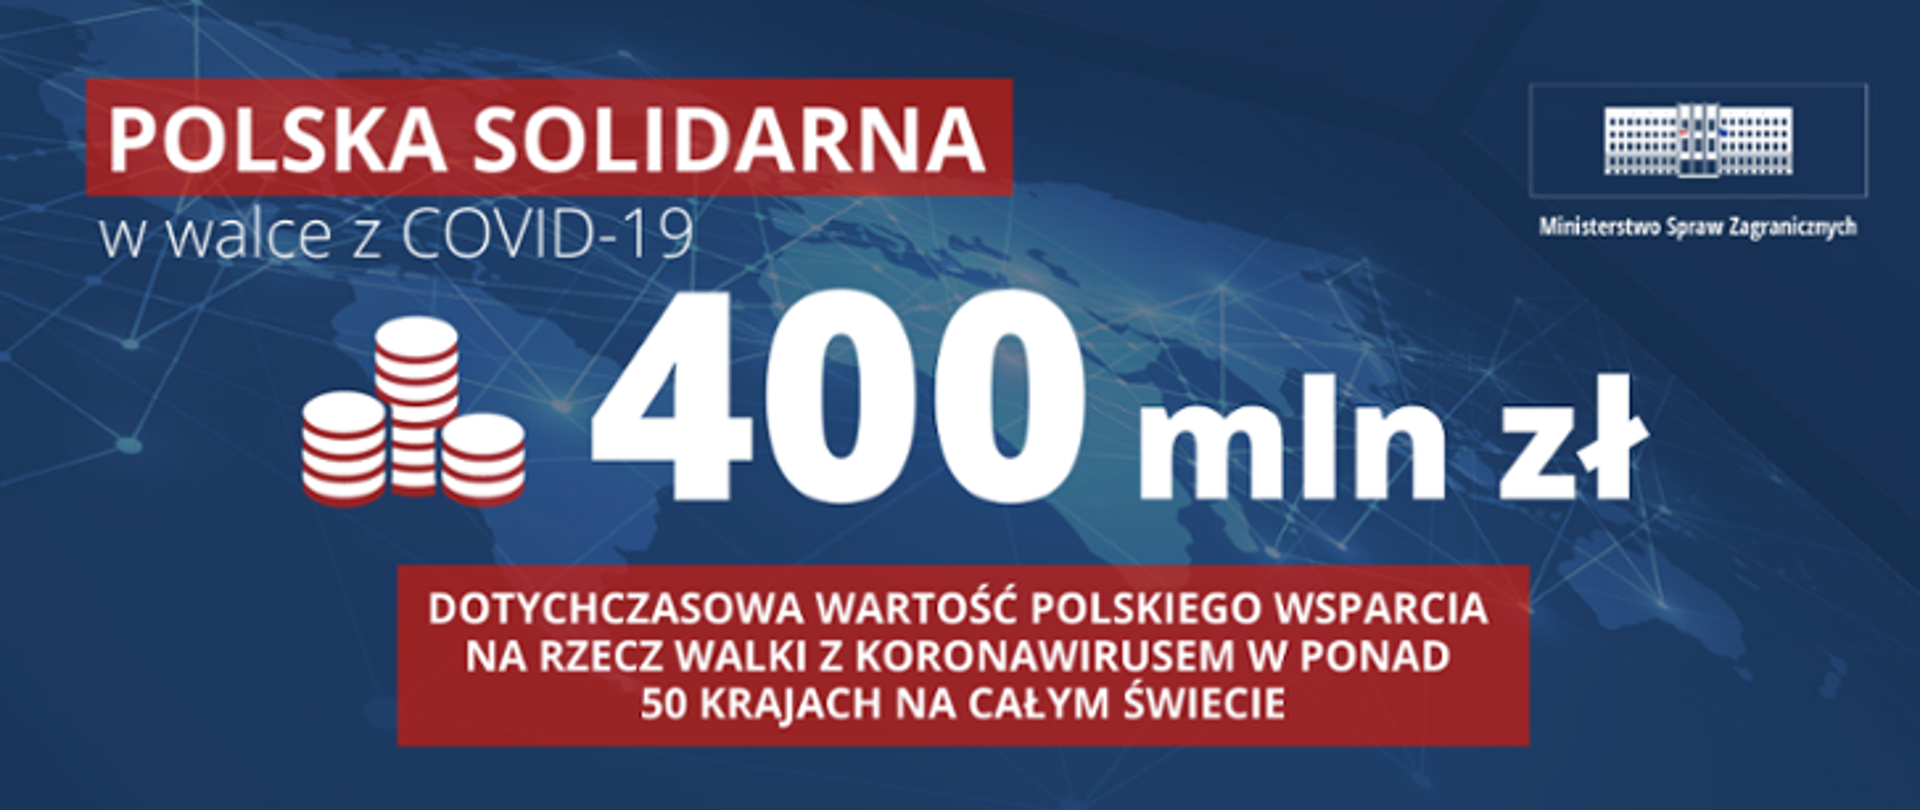 Obrazek z niebieskim tłem z białym napisem Polska solidarna w walce z COVID-19 400 mln zł, dotychczasowa wartość polskiego wsparcia na rzecz walki z koronawirusem w ponad 50 krajach na całym świecie.